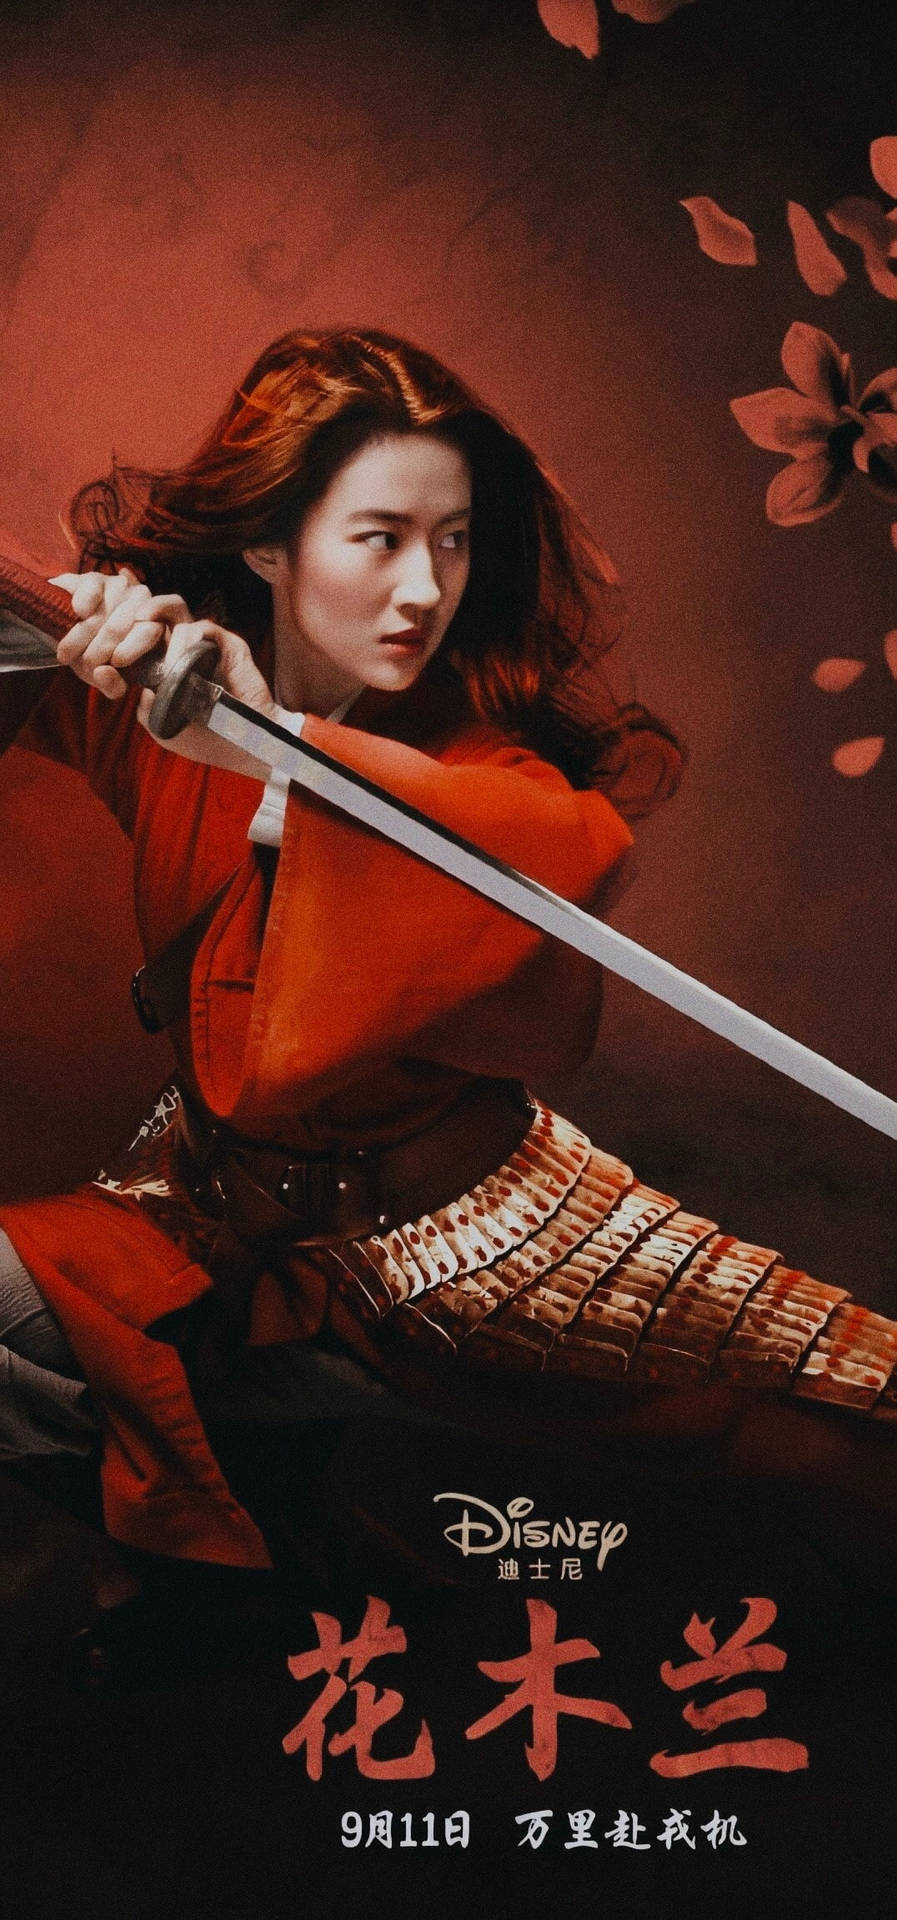 Mulan Film Poster Background